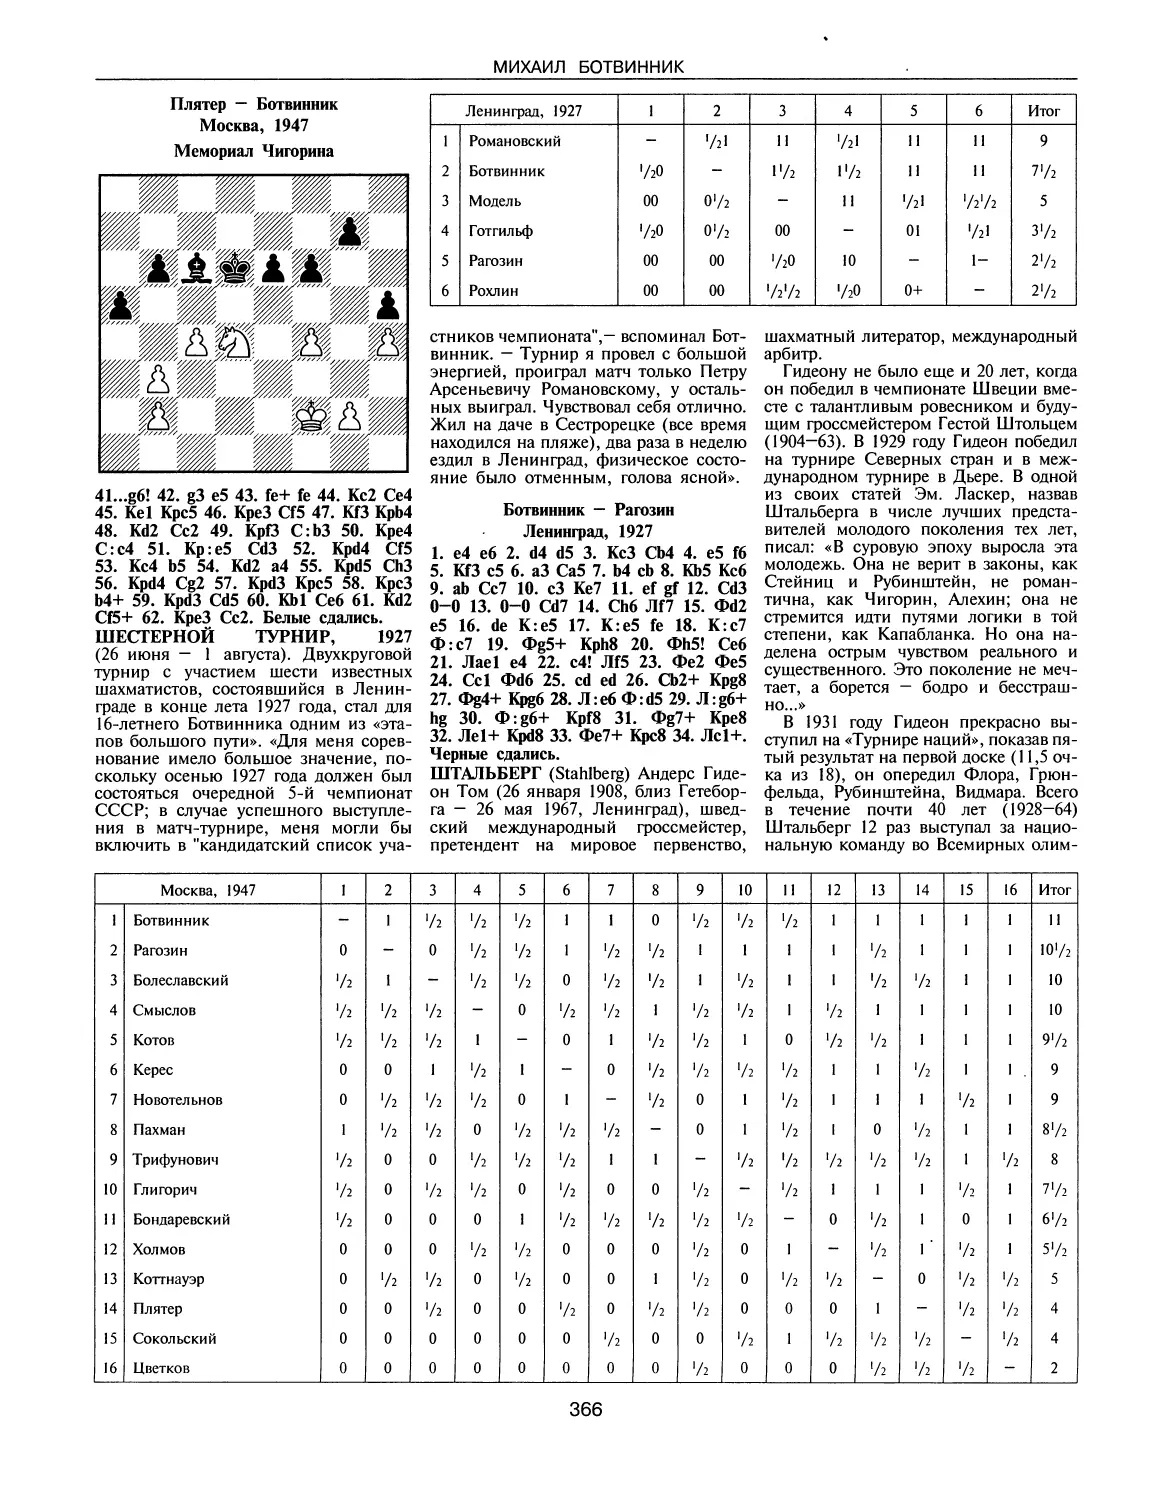 Шестерной турнир, 1927
Штальберг Г.